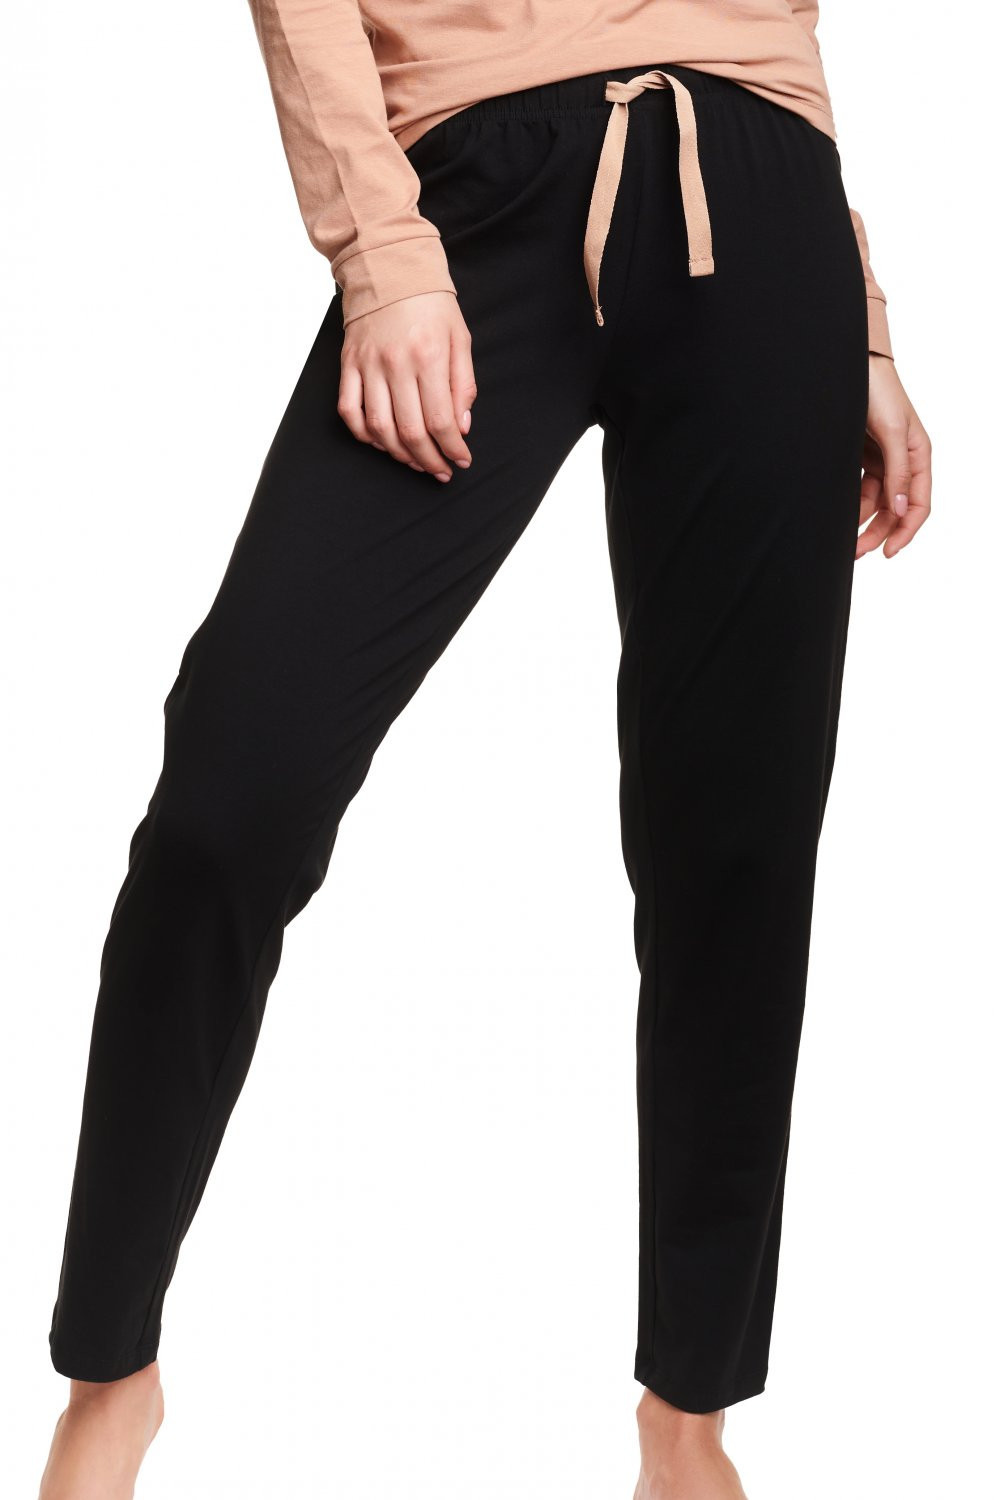 Dámské pyžamo Hnědá s černou hnědočerná XL model 18637682 - Henderson